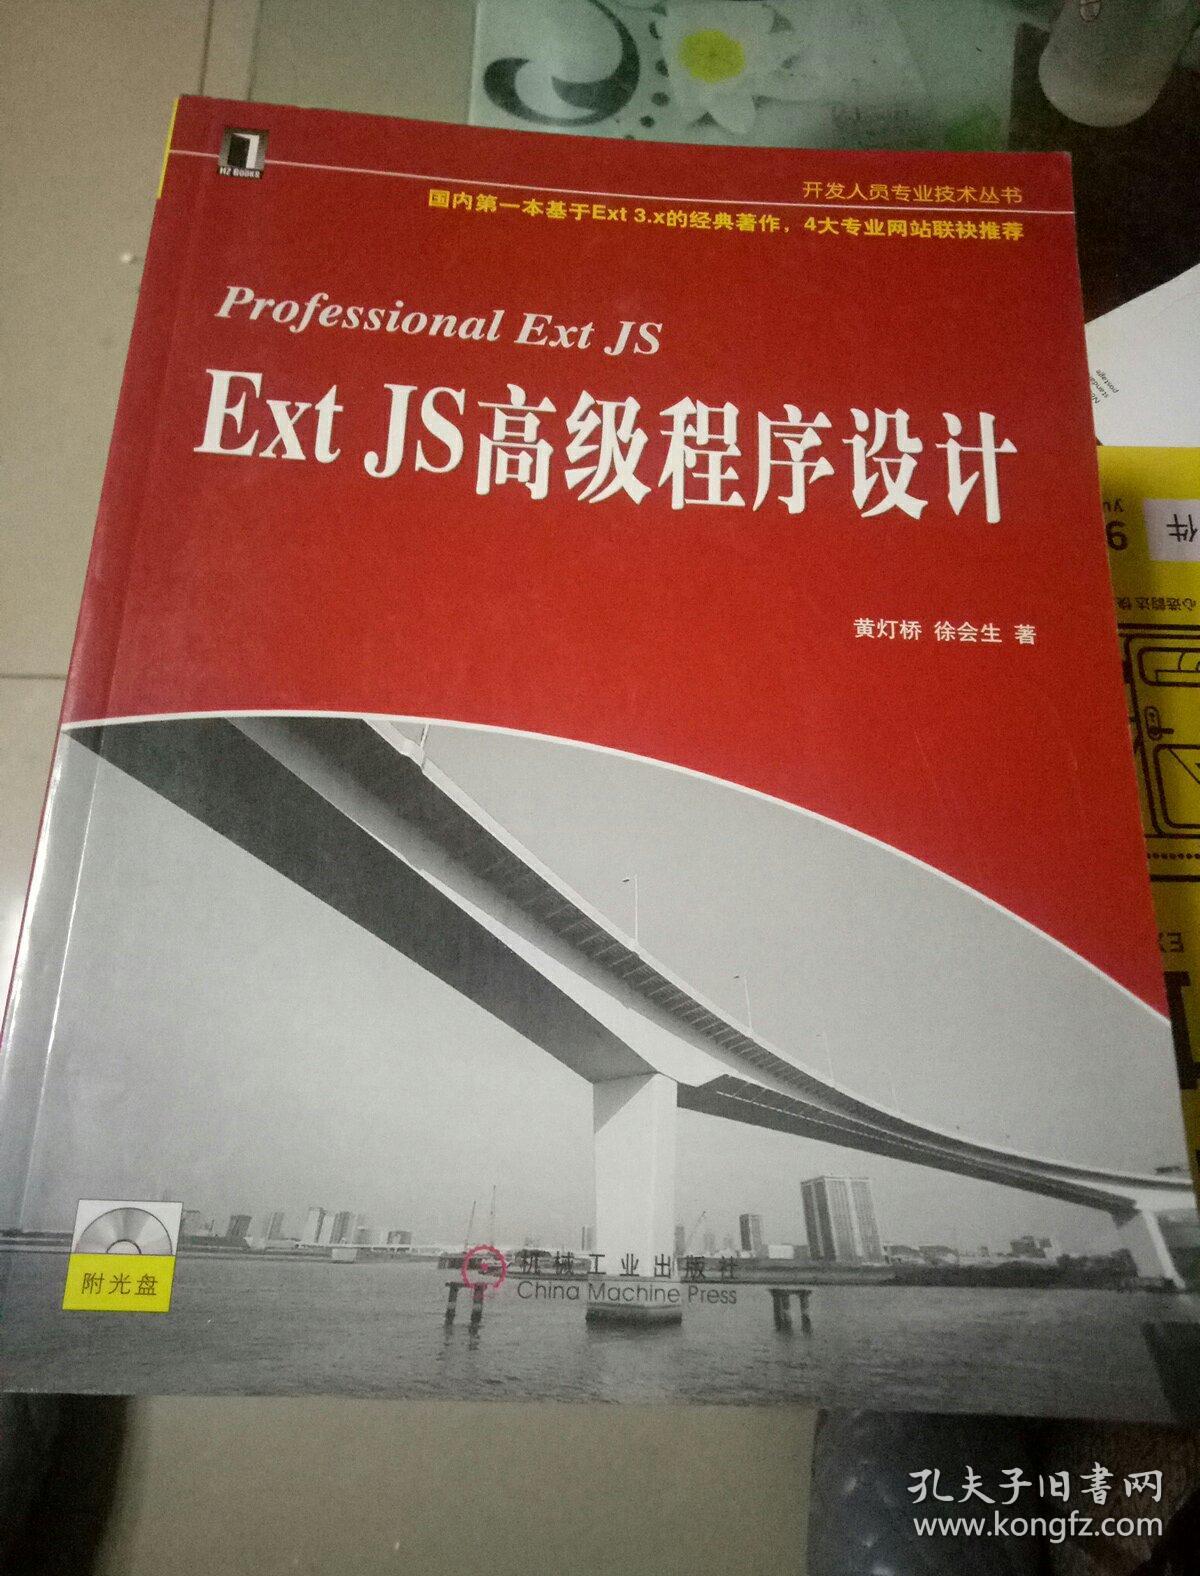 Ext JS高级程序设计:Professional Ext JS